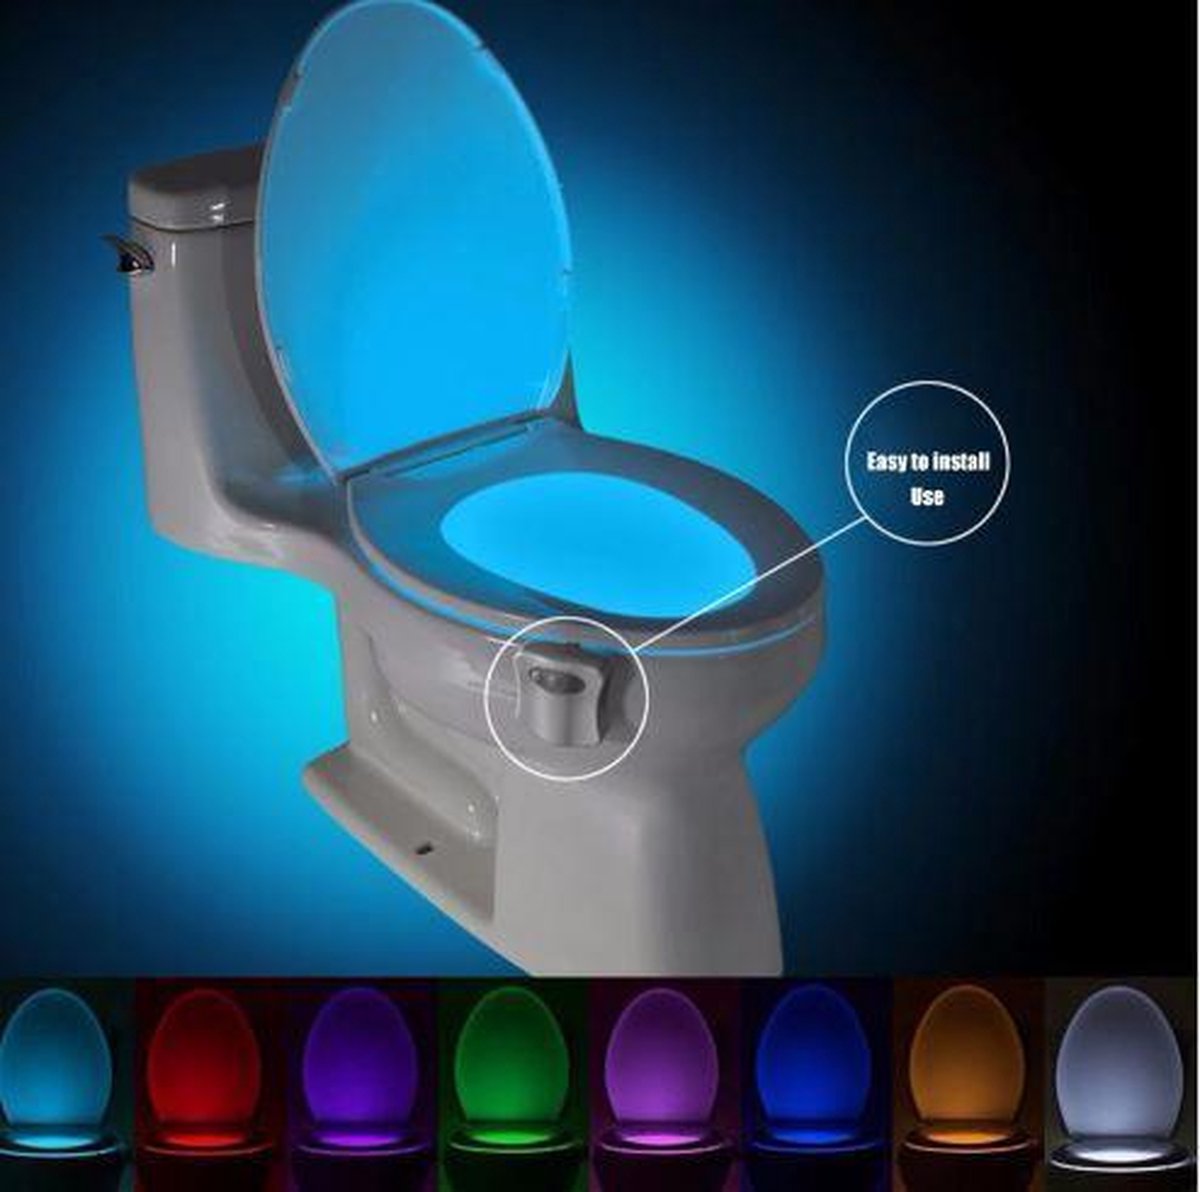 Voorschrijven Souvenir Steil Toiletpotverlichting | Automatisch Led licht voor de WC in 8 veranderende  kleuren | bol.com